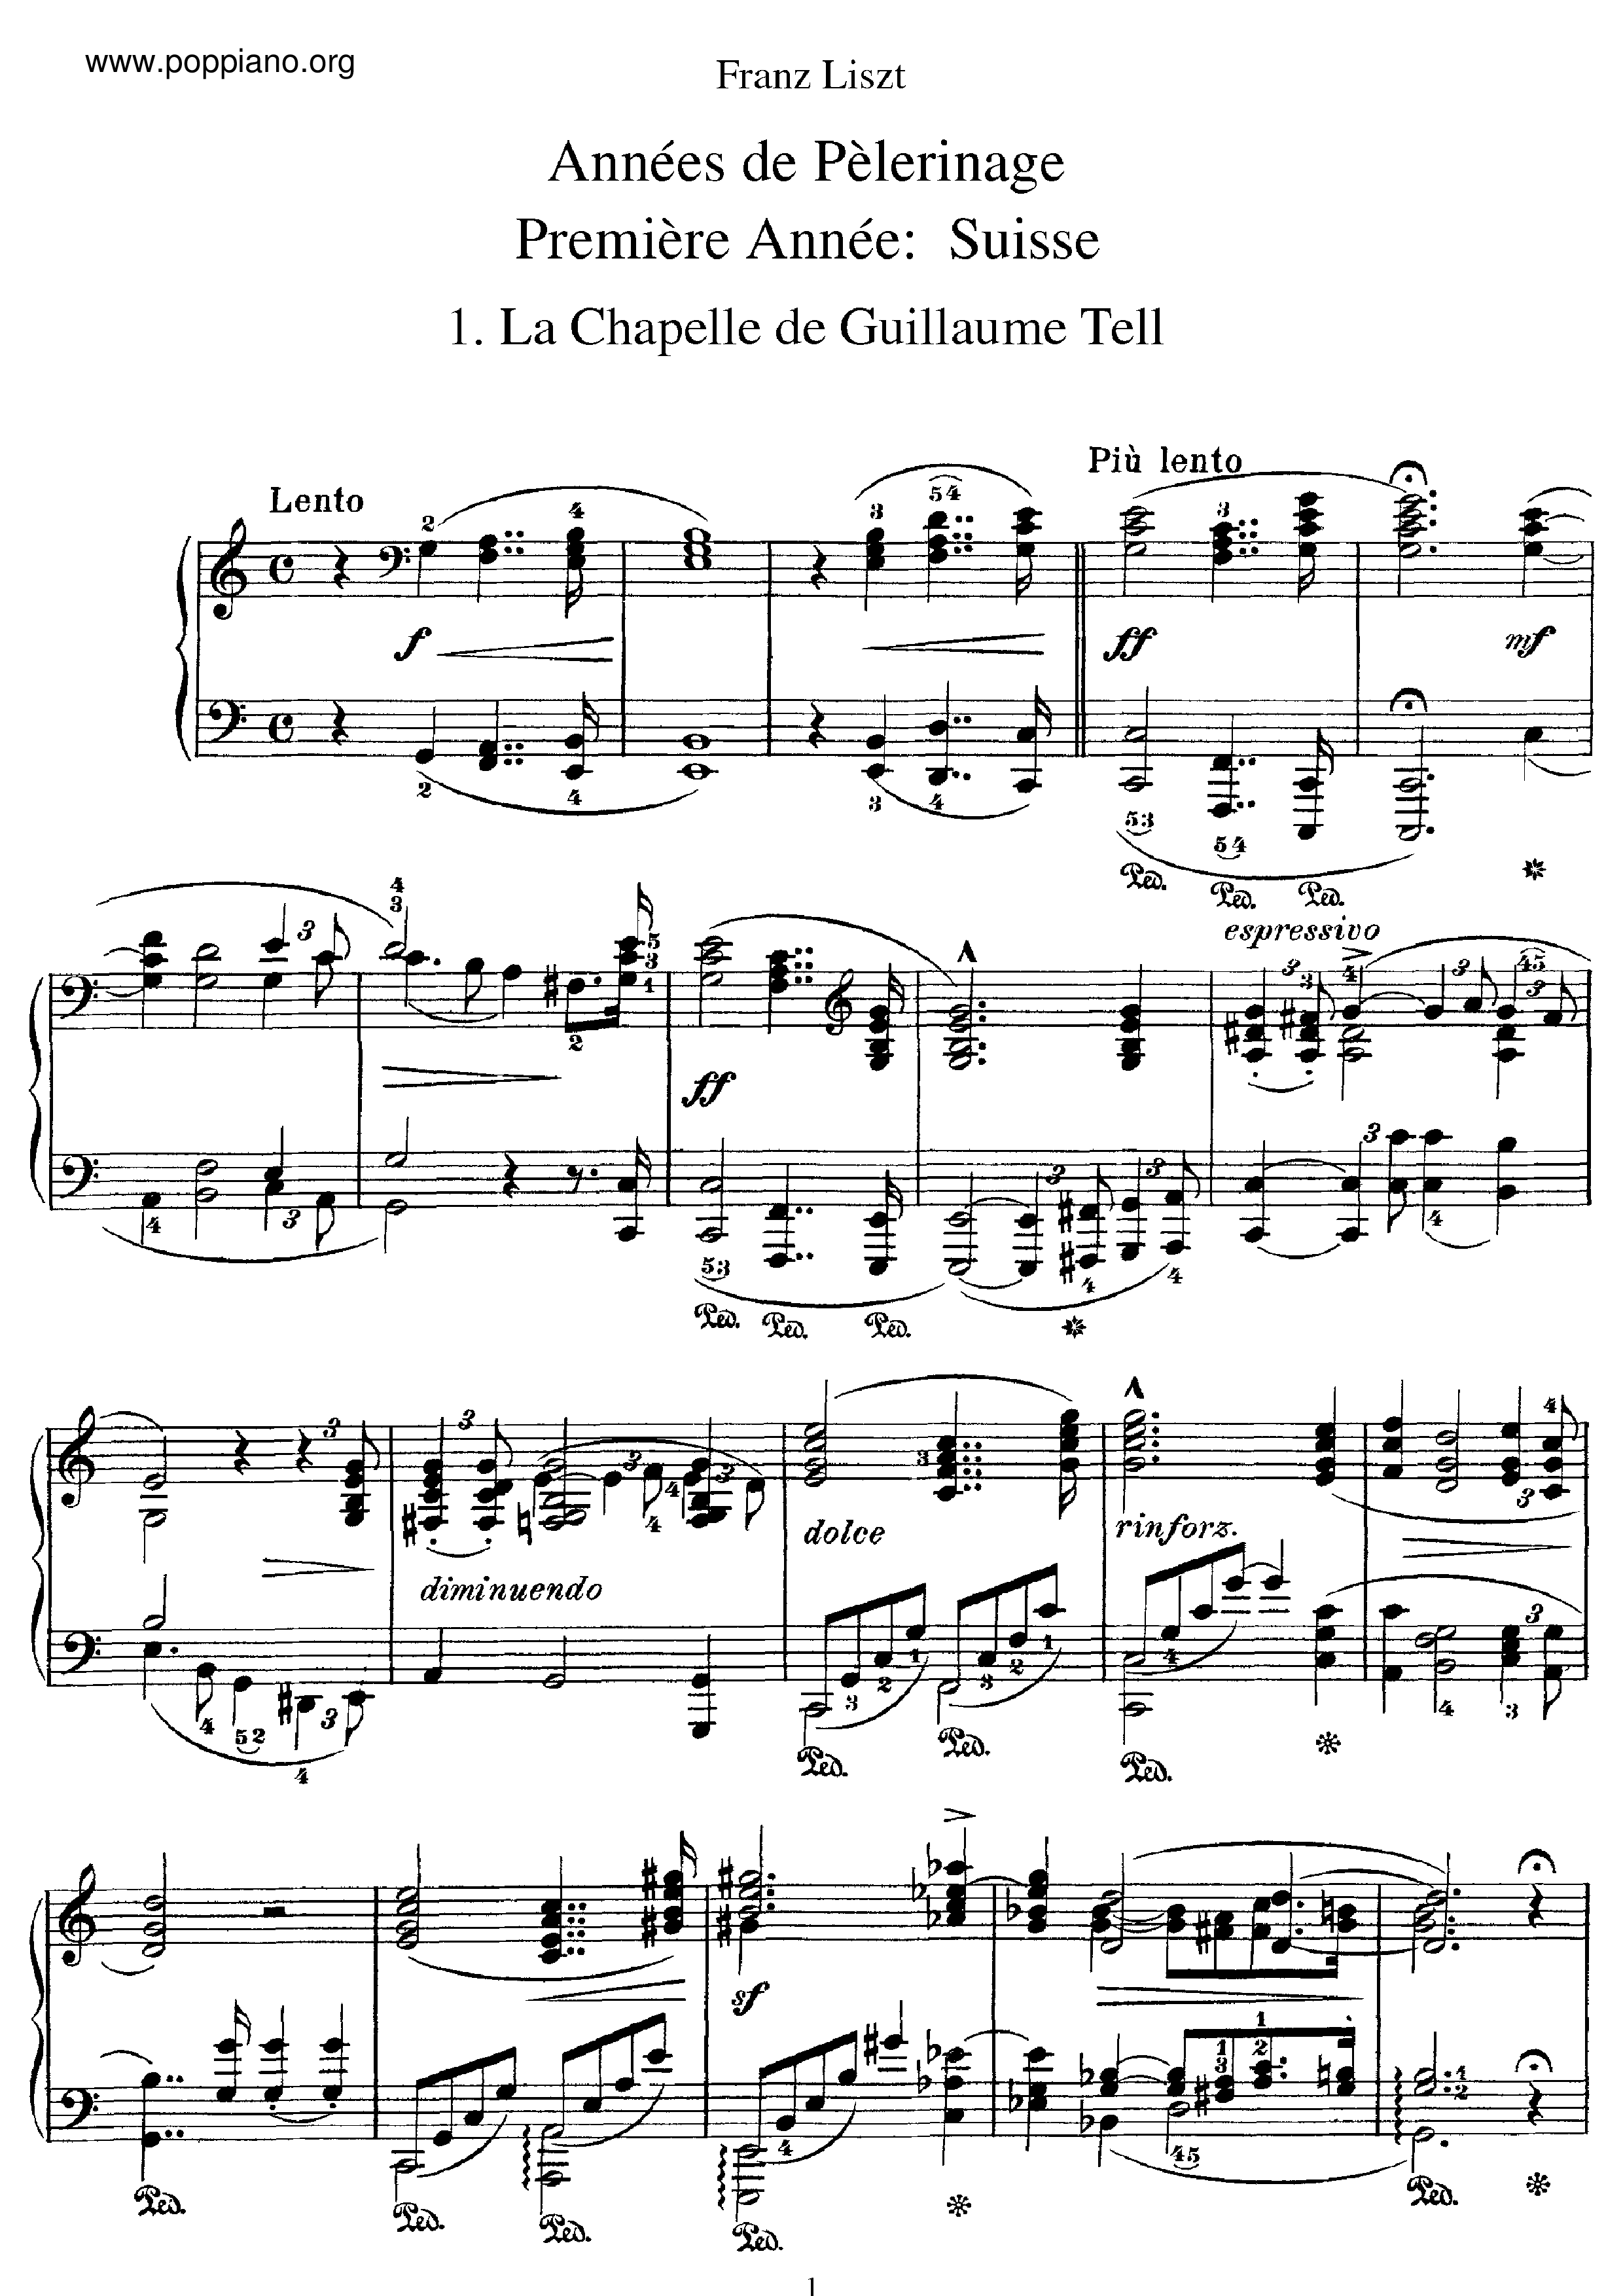 Premiere Annee: Suisse, S.160琴譜